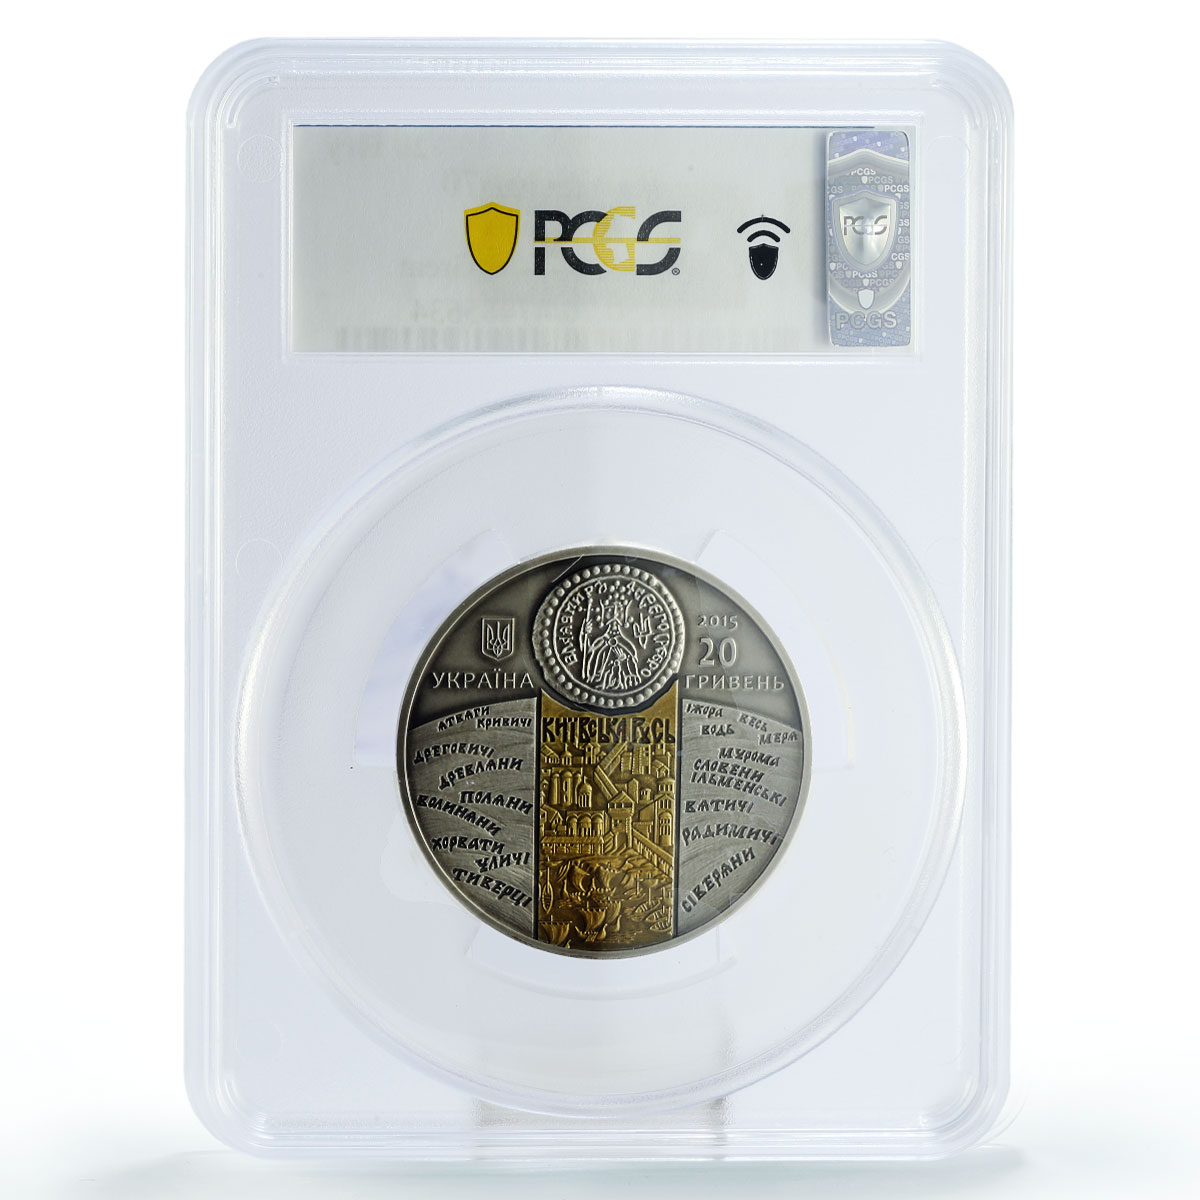 Ukraine 20 hryvnias Prince Volodymyr Great Kievan Rus MS70 PCGS silver coin 2015